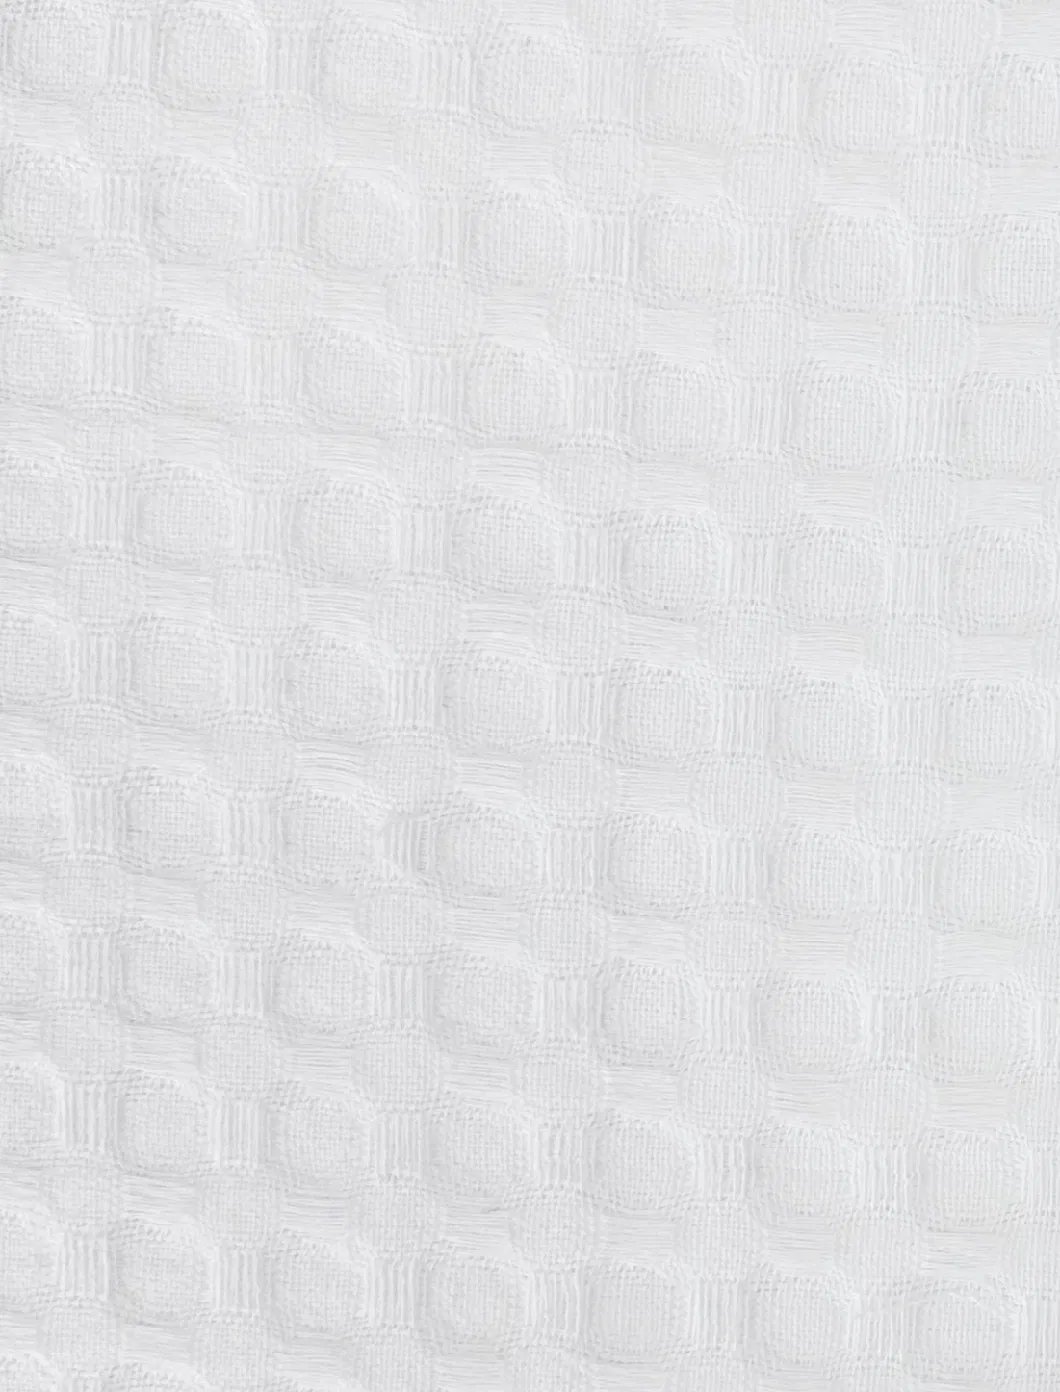 72 X 72 Hotel Quality Bathroom Waffle Weave Yarn Dyed Heavy-Duty Polyester Fabric Shower Curtain